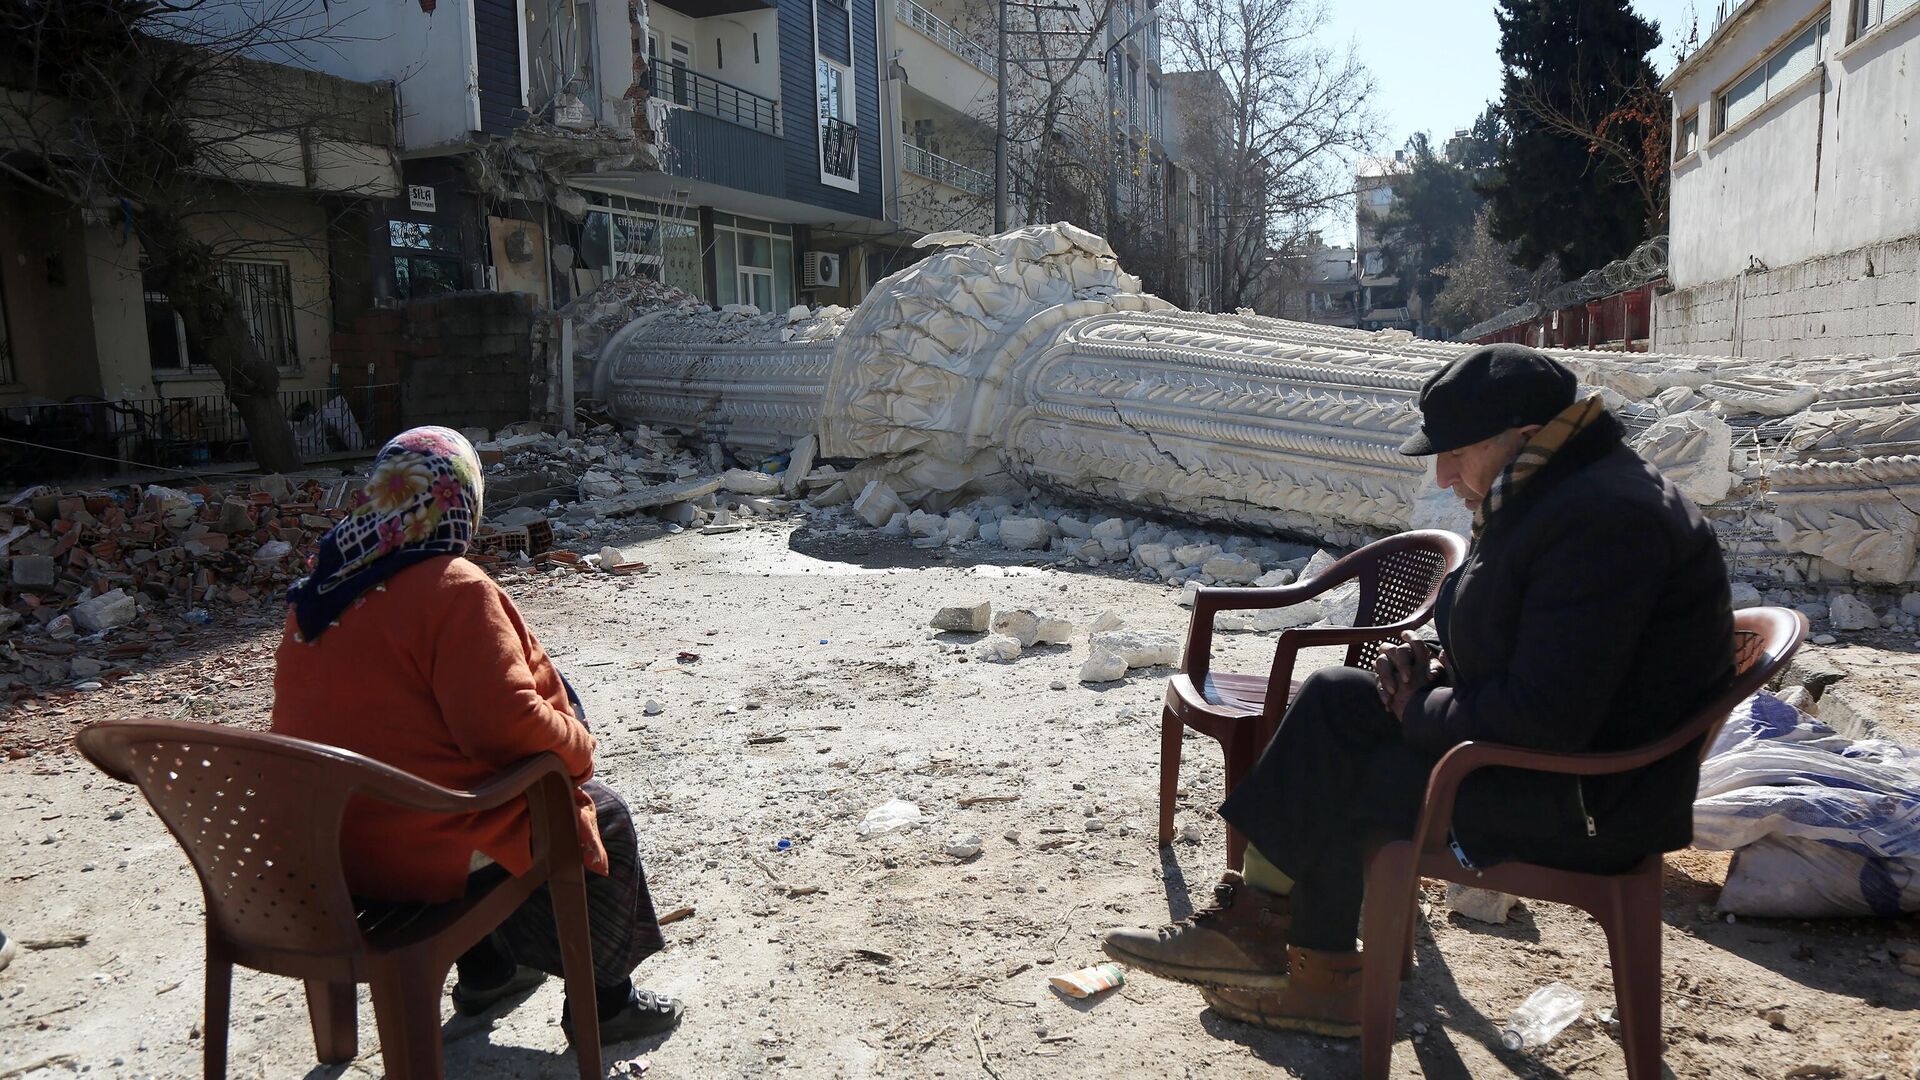 Жители на улице пострадавшего от землетрясения турецкого города Адыямана - РИА Новости, 1920, 16.02.2023